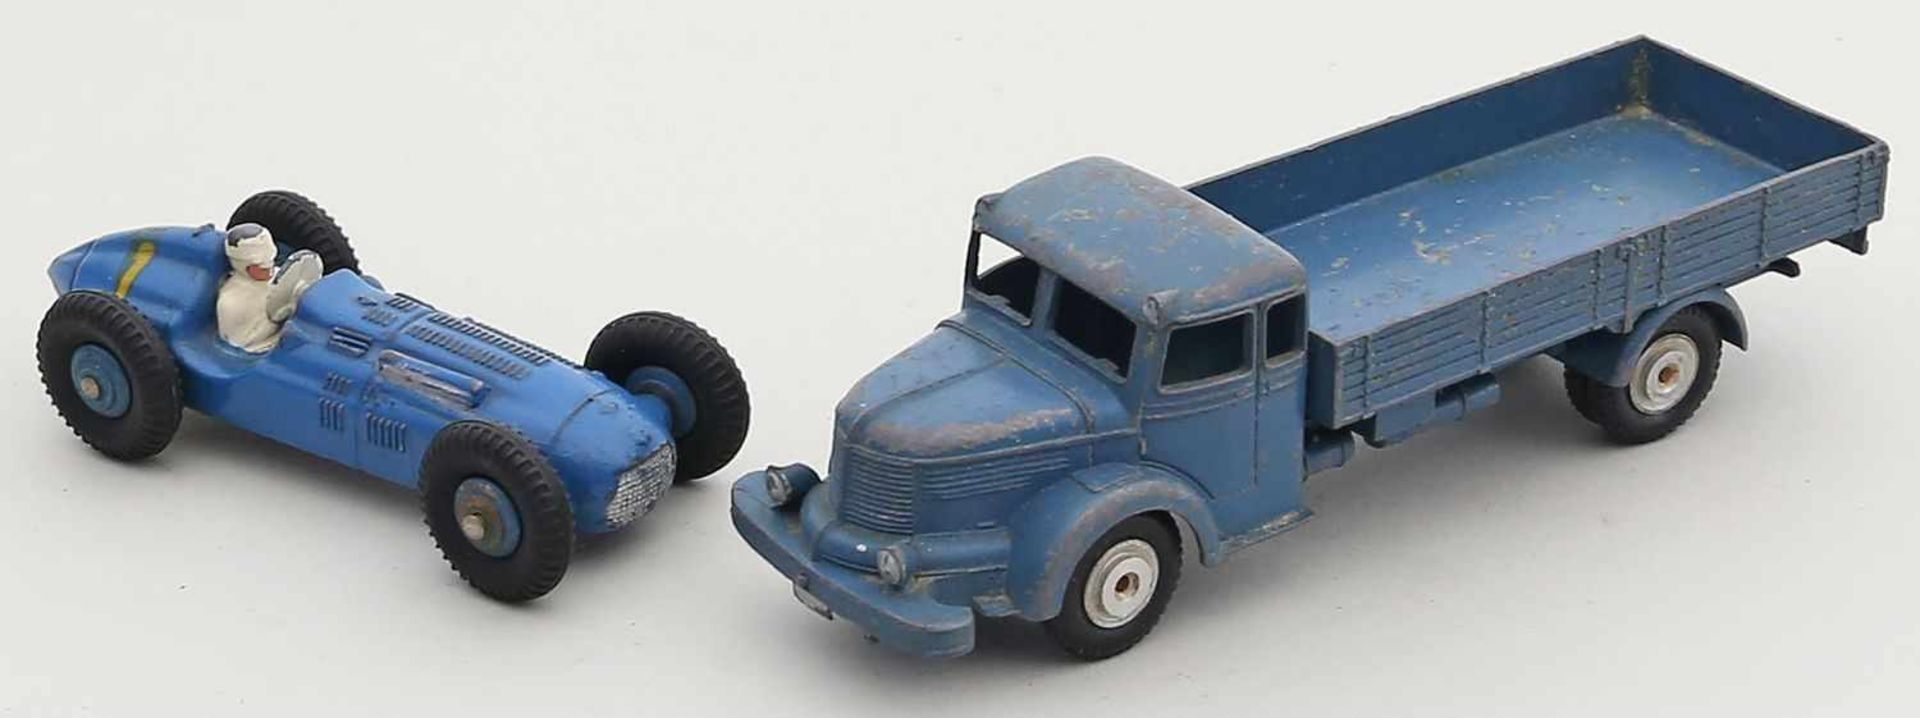 2 Spielzeugautos, 1:43:Märklin-LKW 8009 und Dinky Toys Talbot Lago Nr. 23 H. Bespielt und